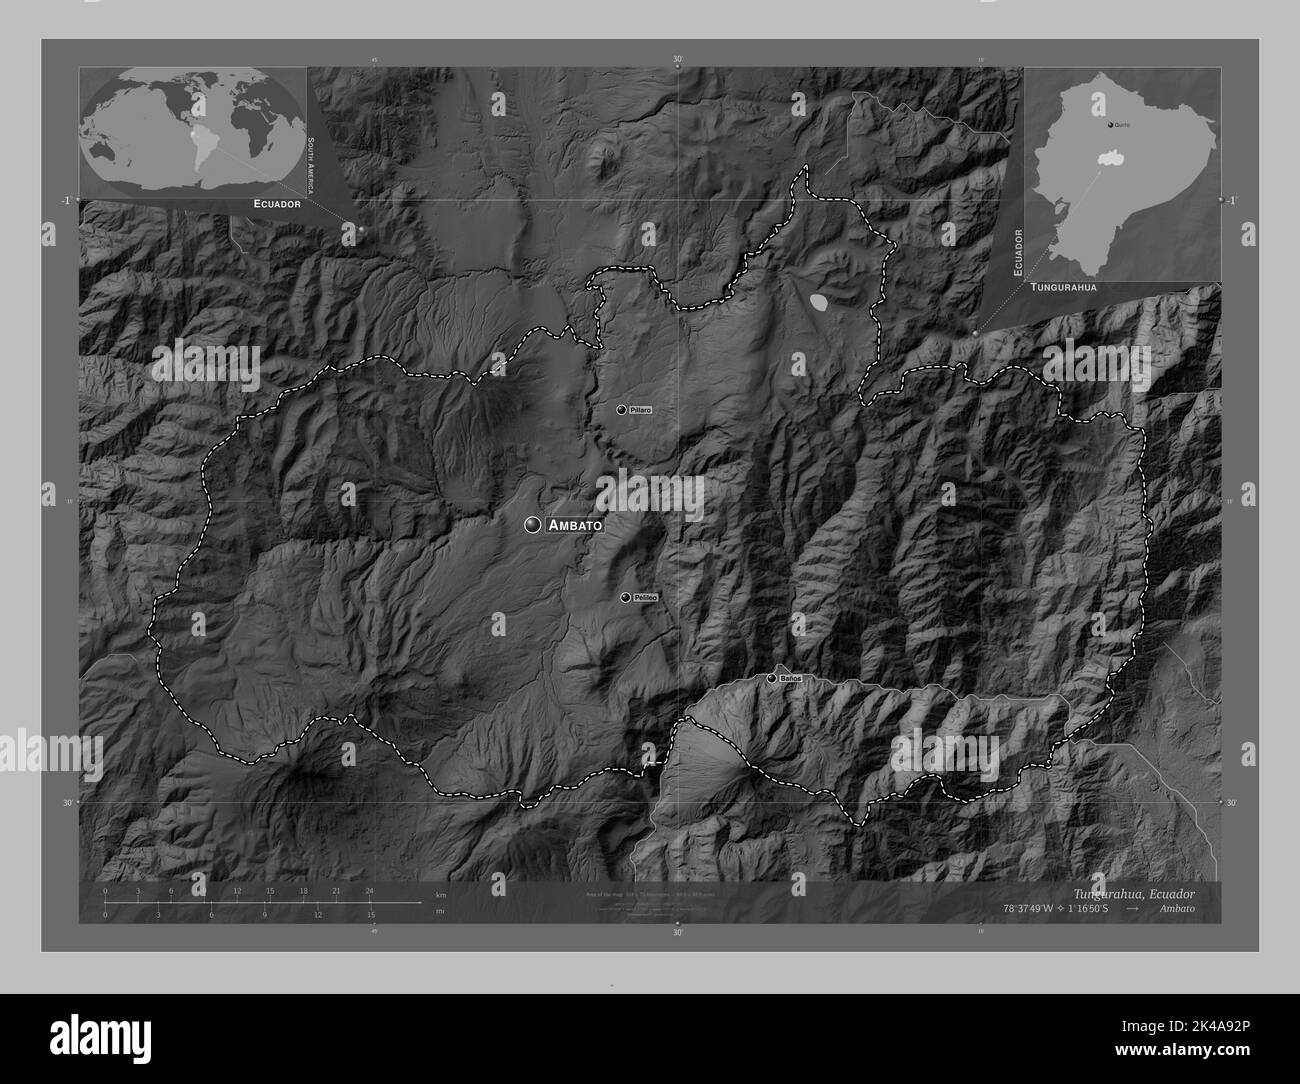 Tungurahua, province de l'Équateur. Carte d'altitude en niveaux de gris avec lacs et rivières. Lieux et noms des principales villes de la région. Angle auxiliaire bas Banque D'Images